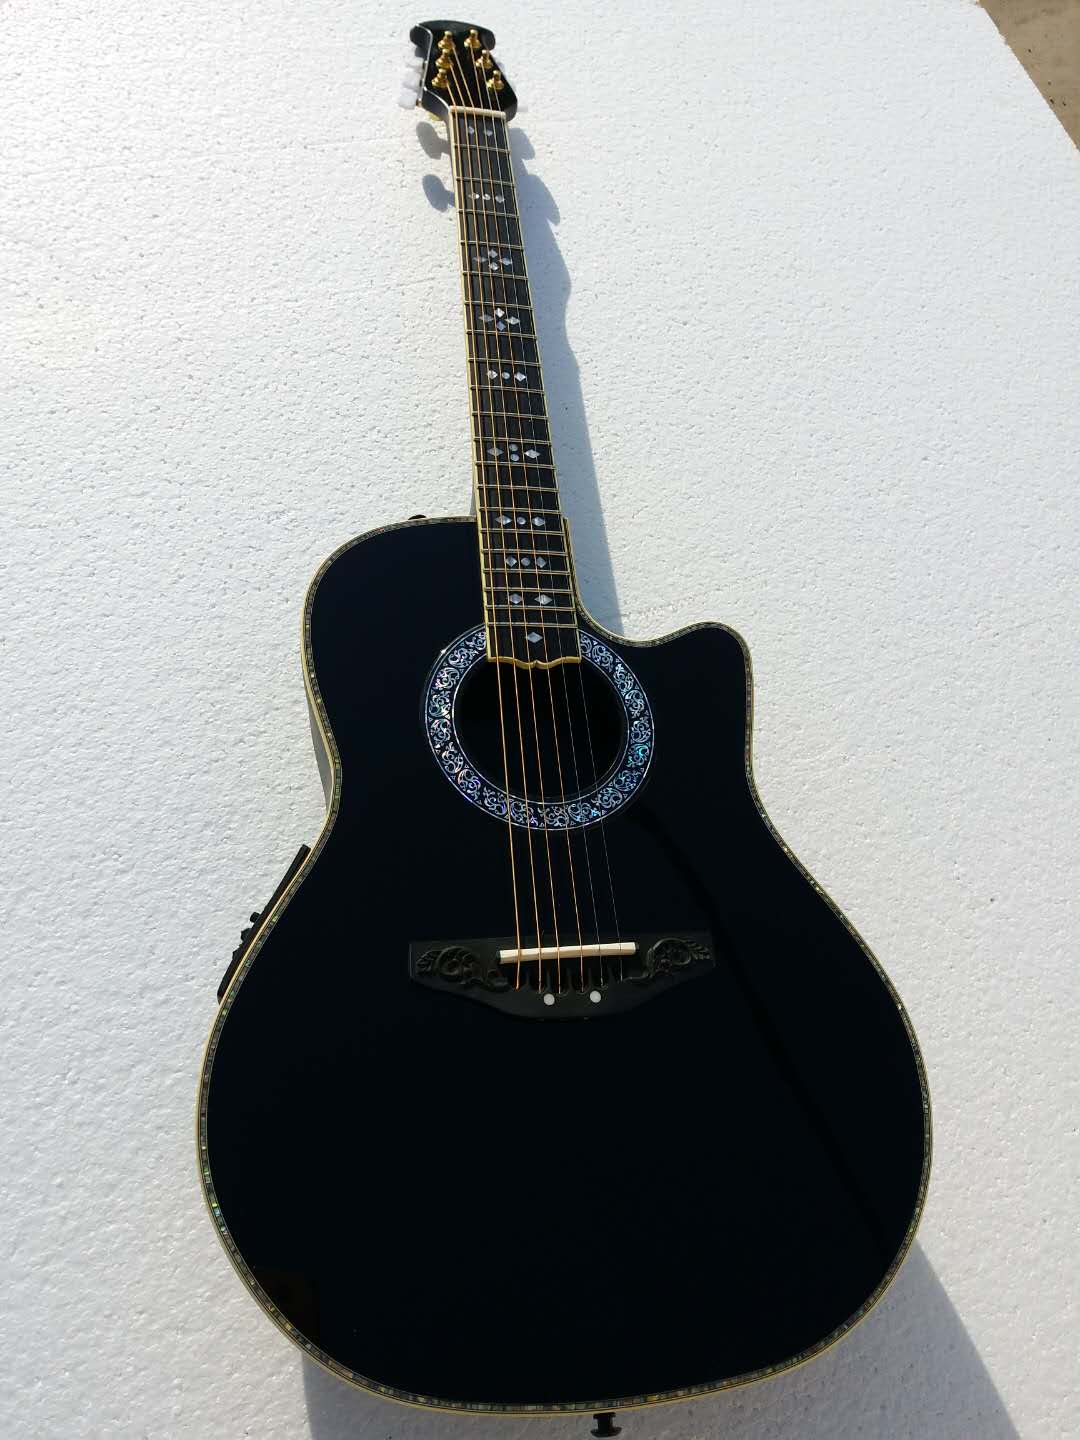 6文字列オーベーションアコースティックギター手作りアコースティックエレクトリックギターエボニーフレットボードF-5TプリアンプピックアップEQプロフェッショナルフォークギター